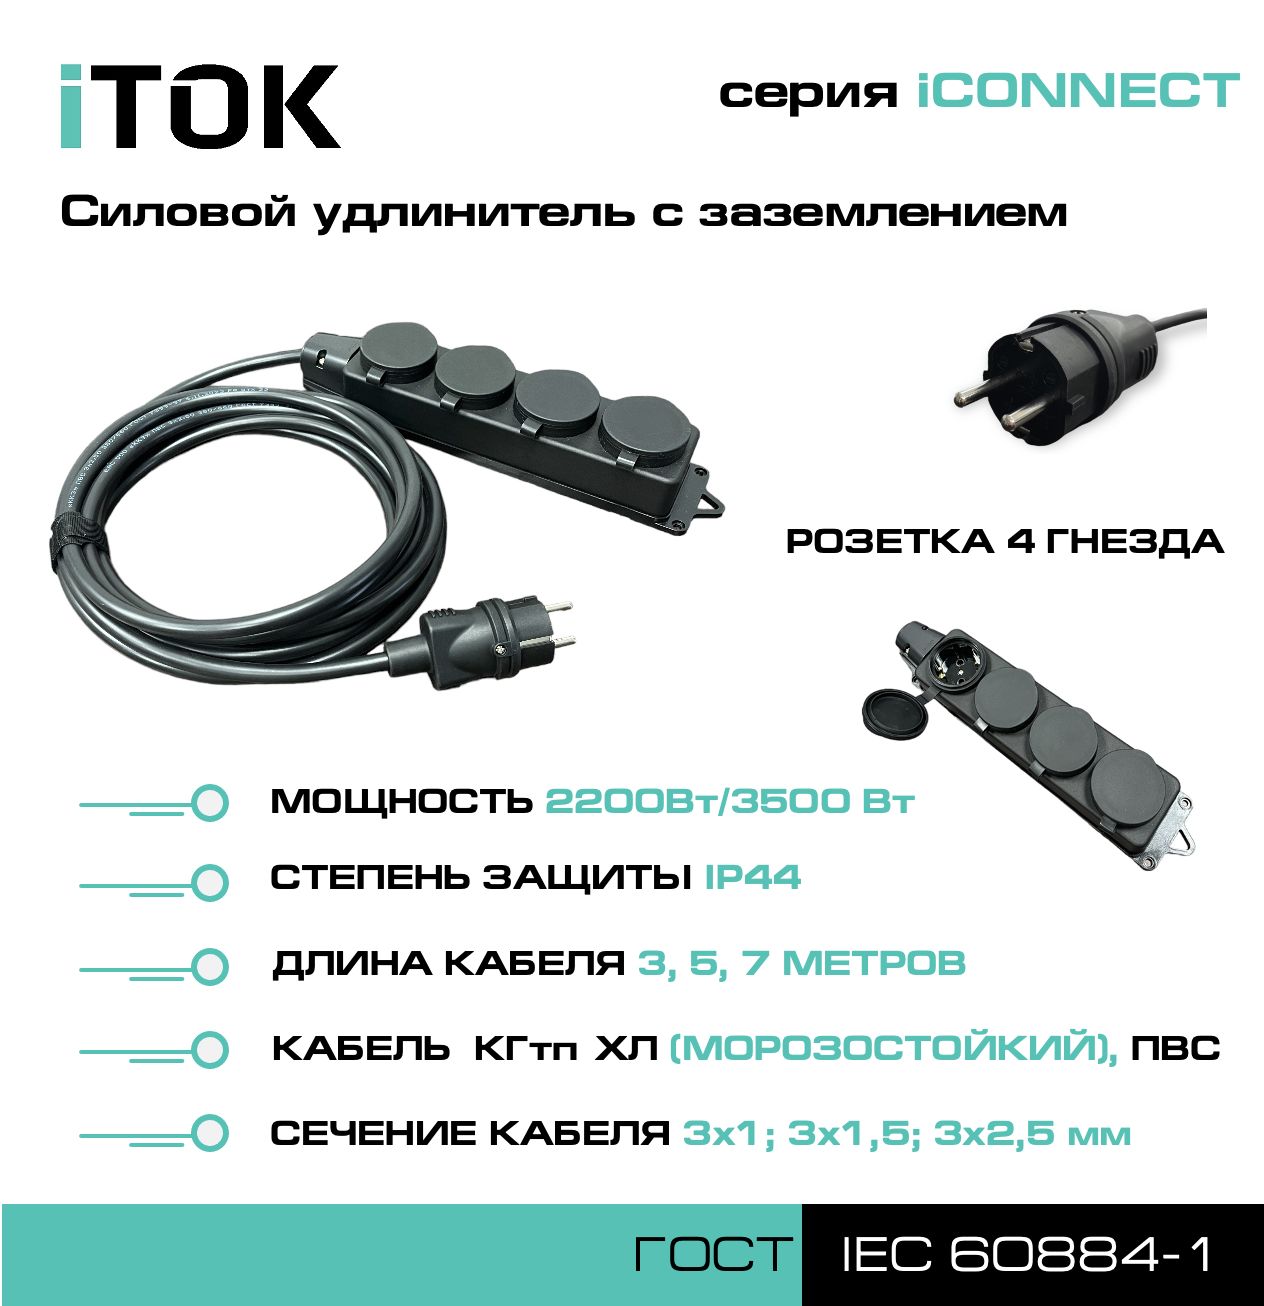 Удлинитель с заземлением серии iTOK iCONNECT КГтп-ХЛ 3х2,5 мм 4 гнезда IP44 3 м